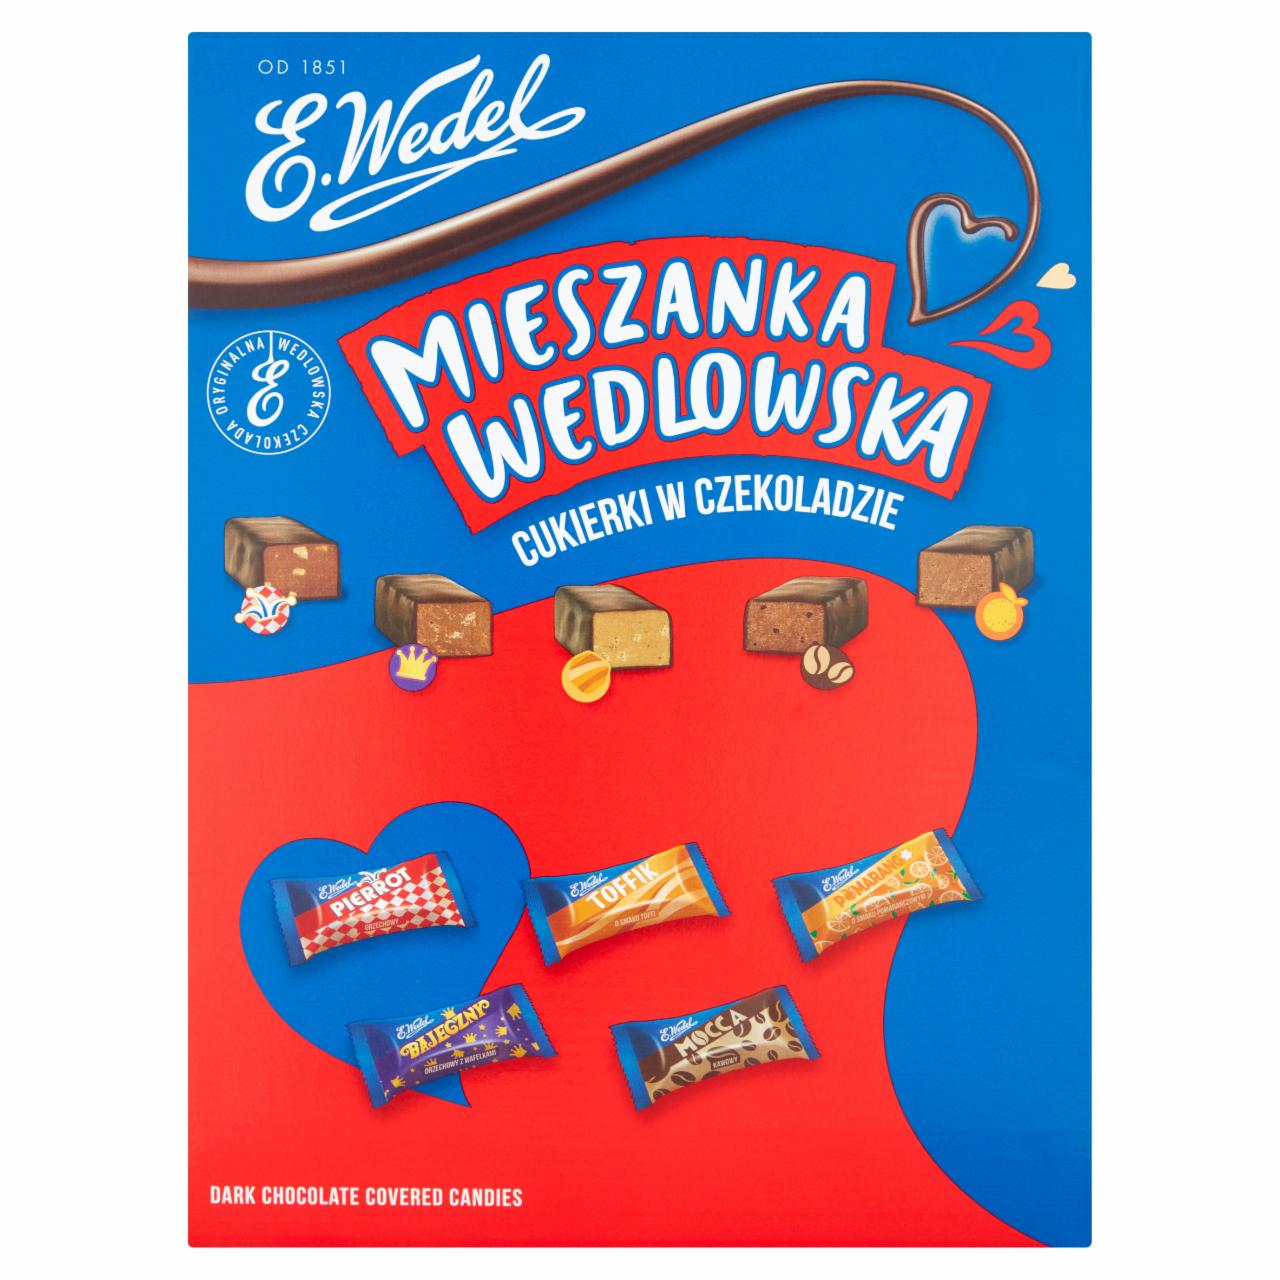 Zdjęcia - E. Wedel Mieszanka Wedlowska Cukierki w czekoladzie deserowej 3 kg